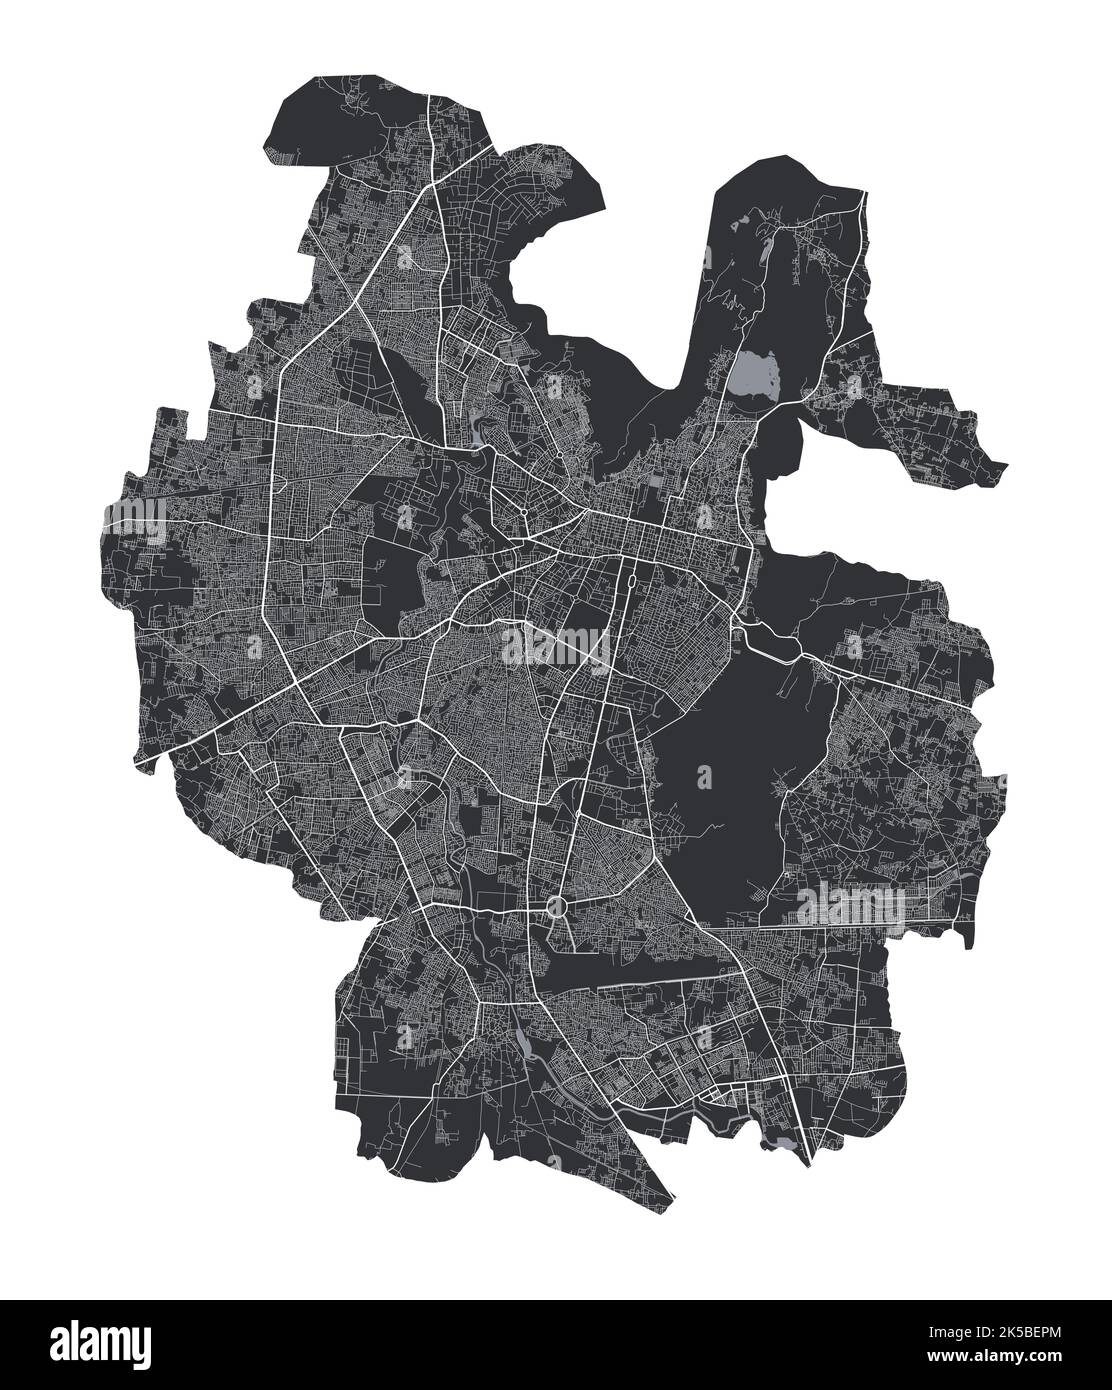 Jaipur-Karte. Detaillierte Vektorkarte von Jaipur Stadt Verwaltungsgebiet. Blick auf das Stadtbild mit Postern und die Arie der Metropole. Schwarzes Land mit weißen Straßen und Alleen. Stock Vektor